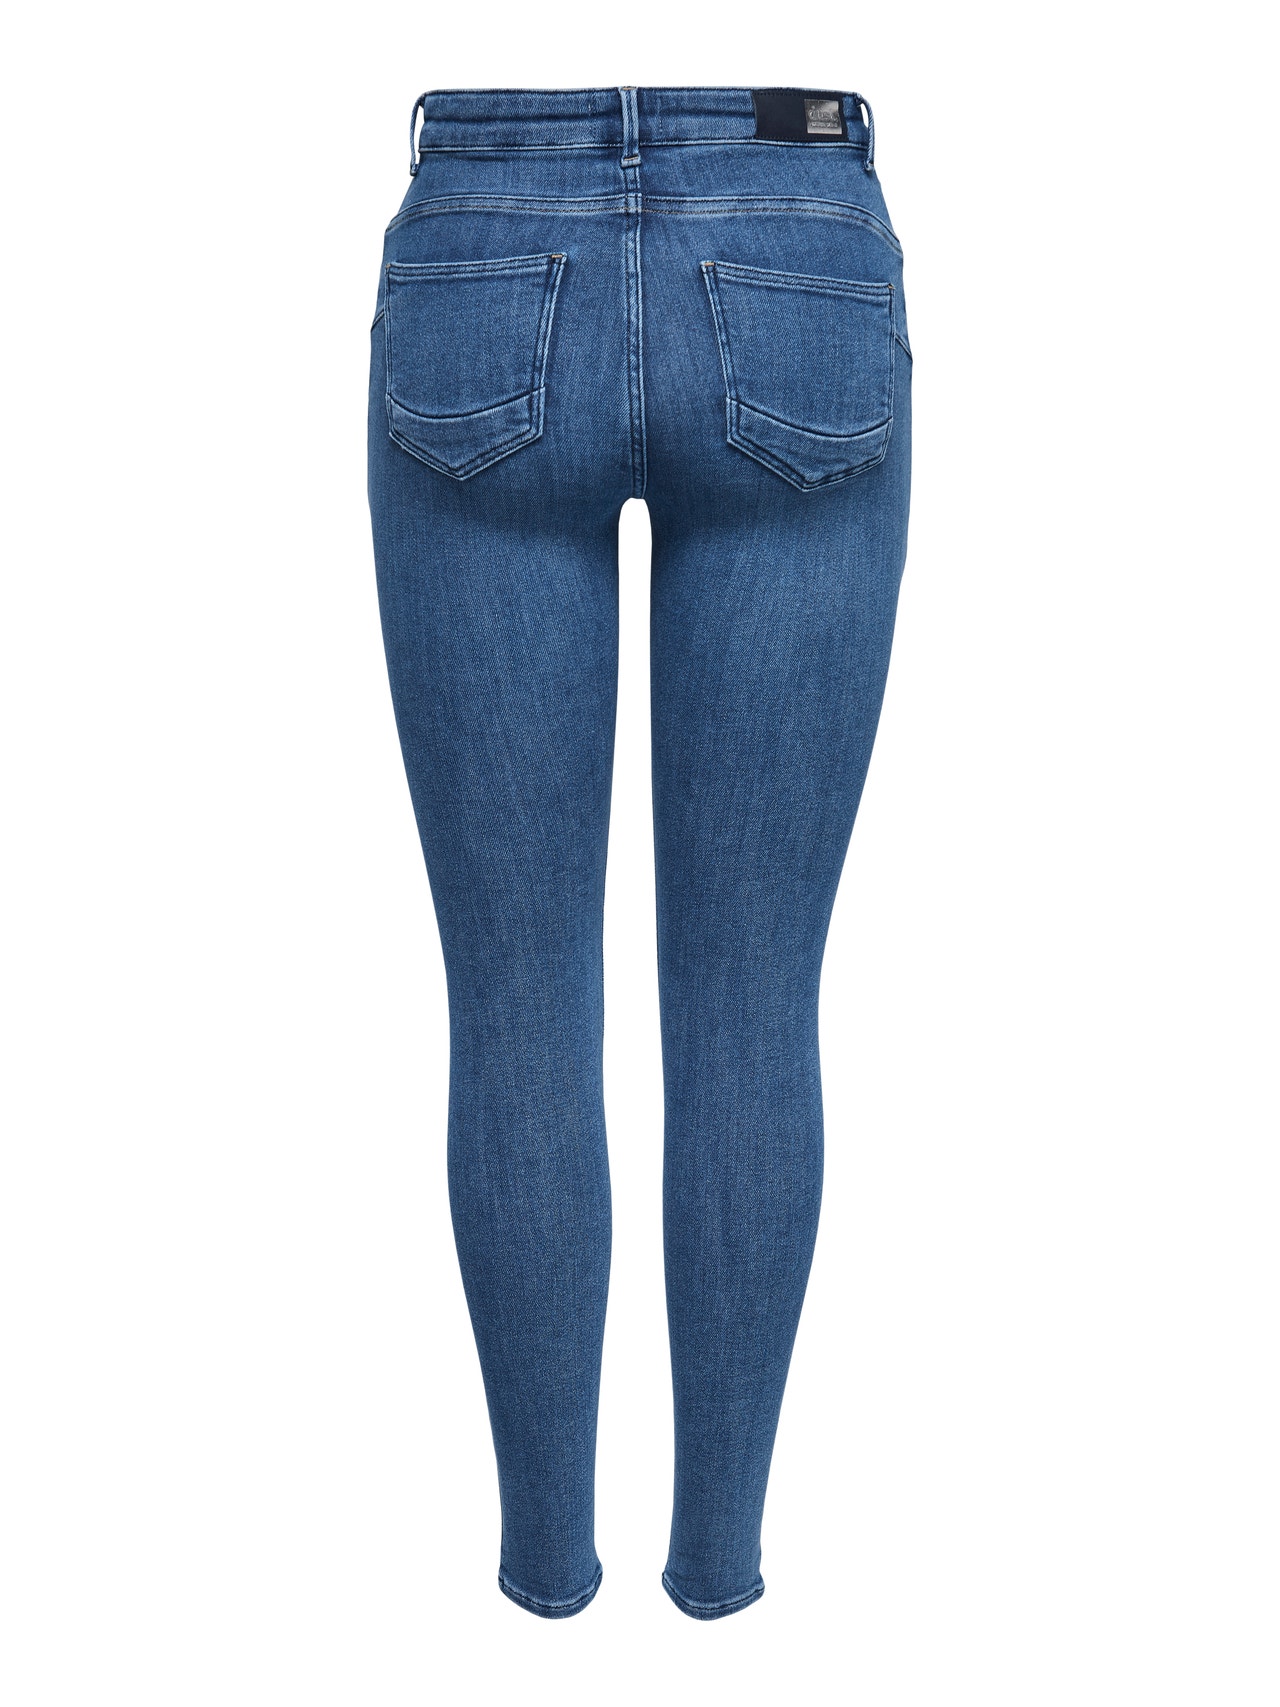 ONLY onlpower mid waist skinny push-up jeans -Light Blue Denim - 15169892